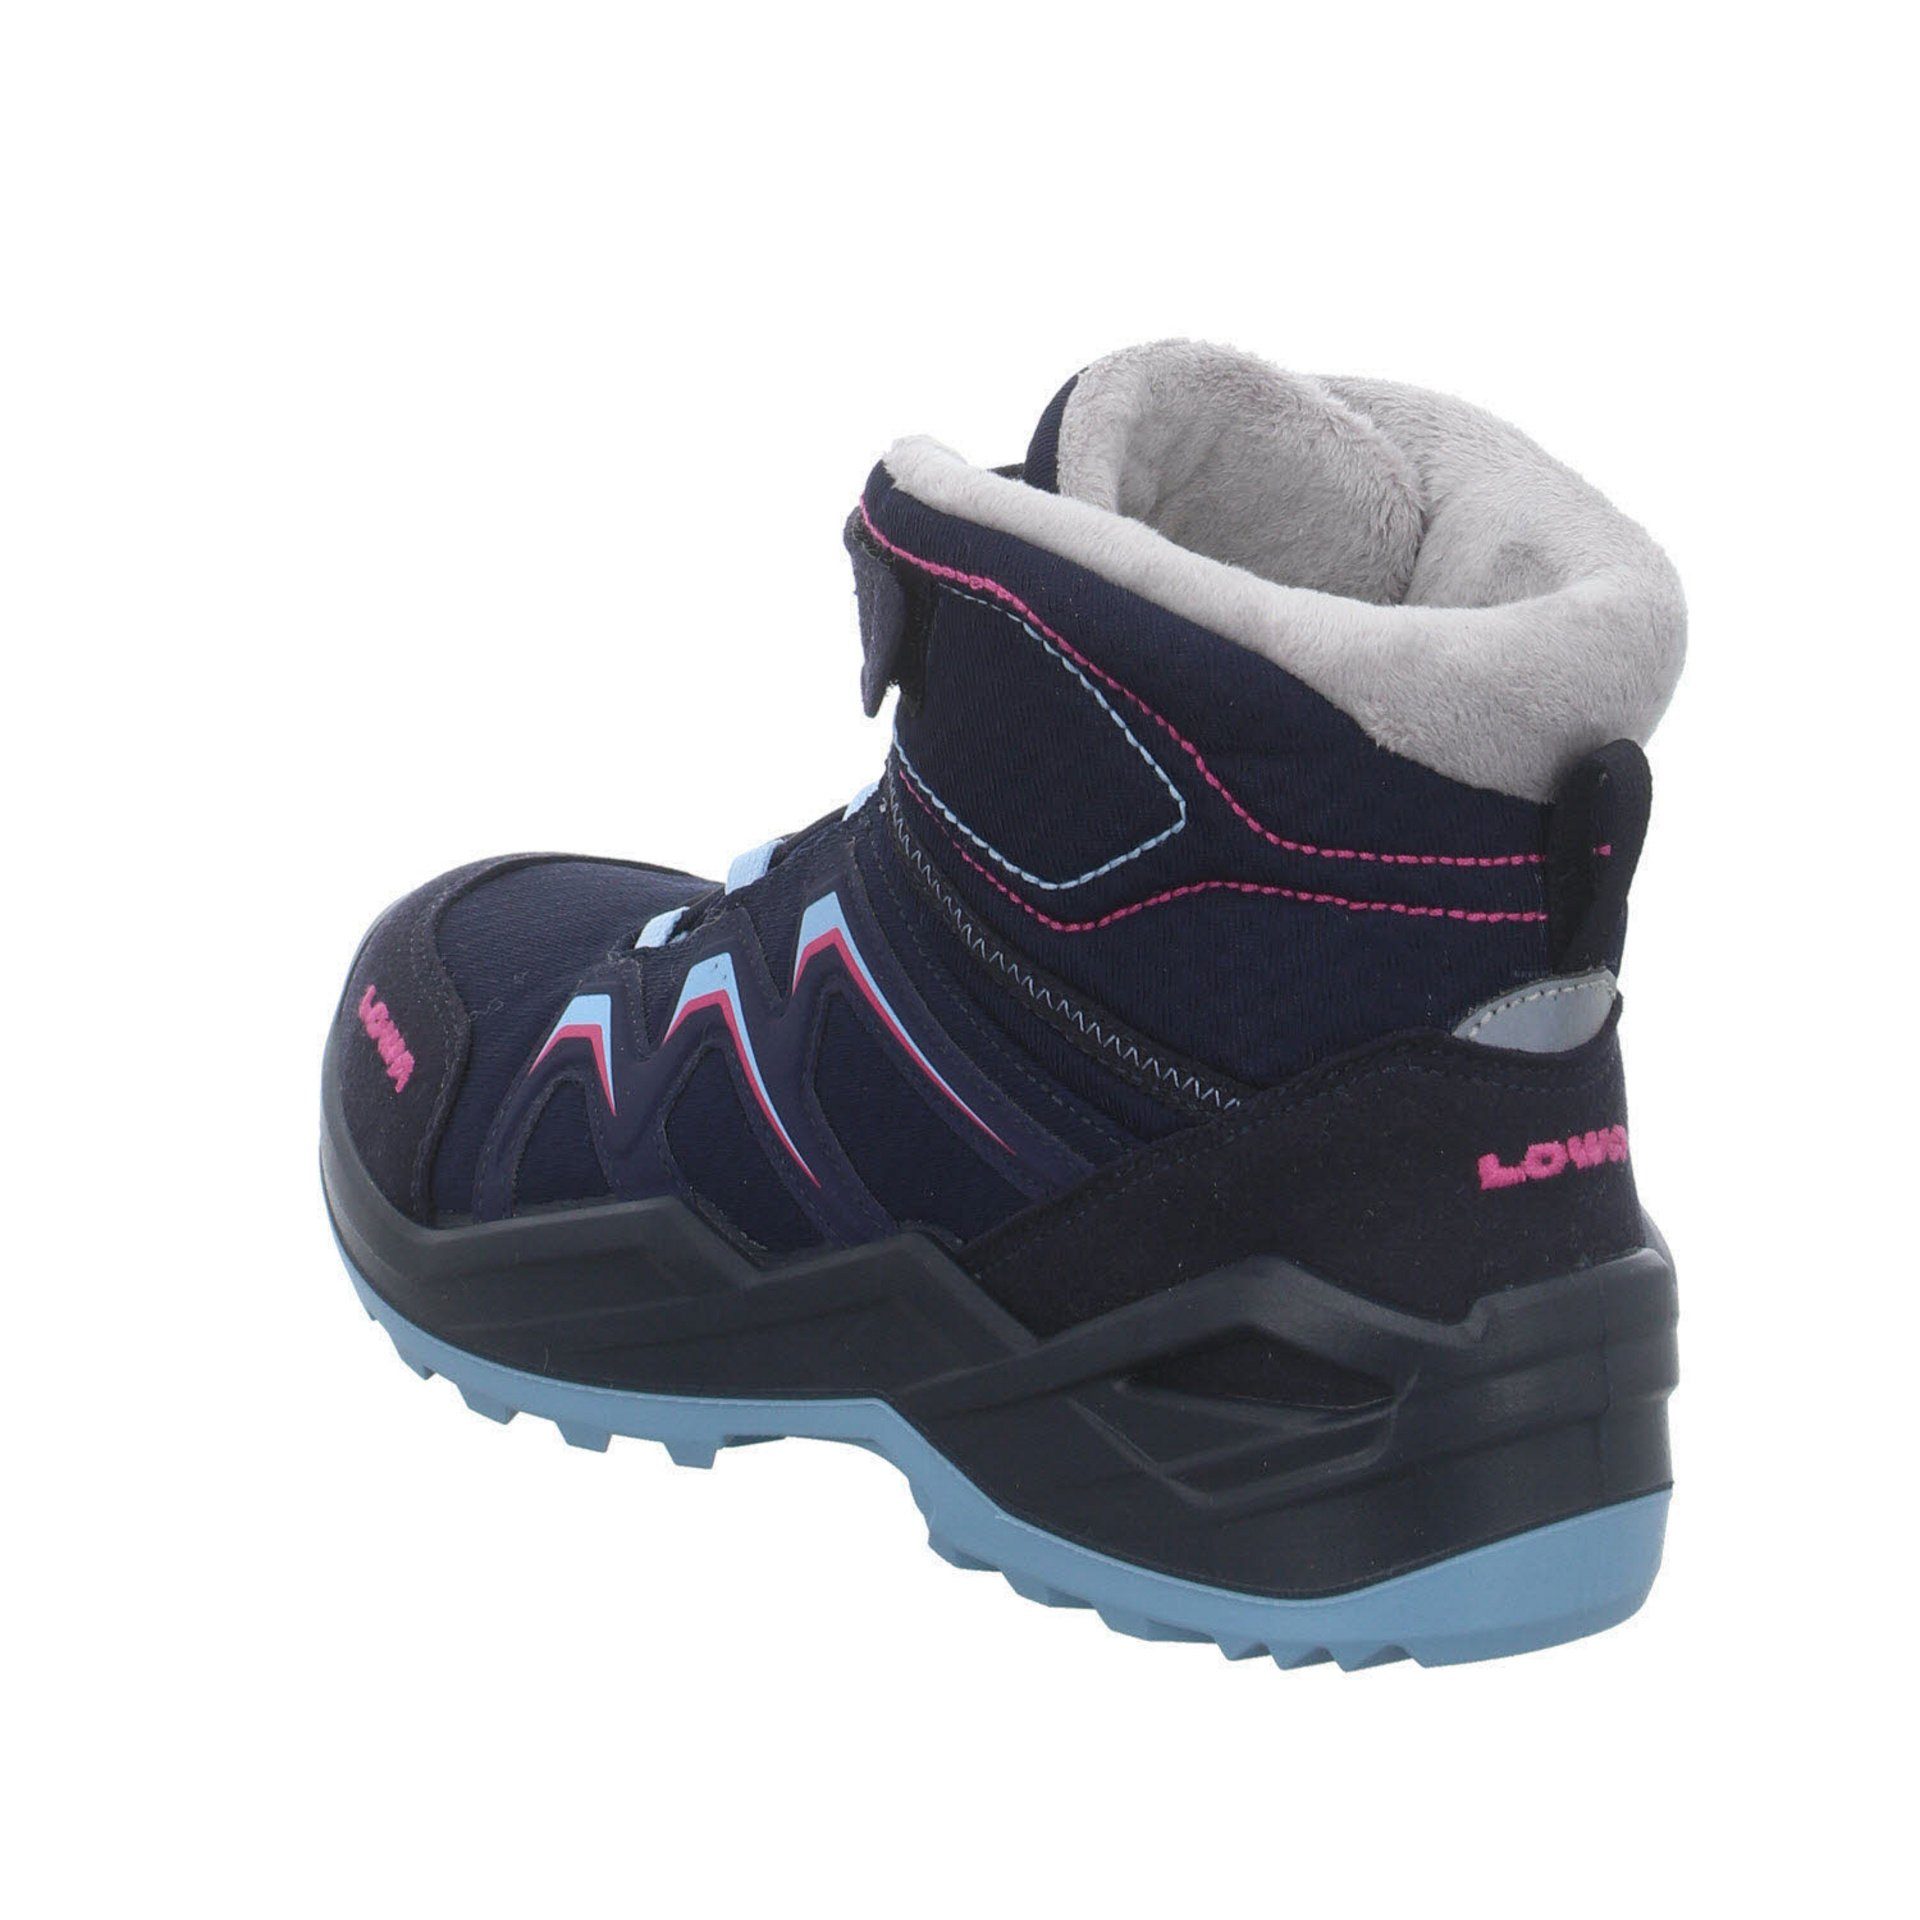 Stiefel Warm Schuhe Boots Stiefel Lowa Jungen GTX Textil NAVY/BEERE Maddox